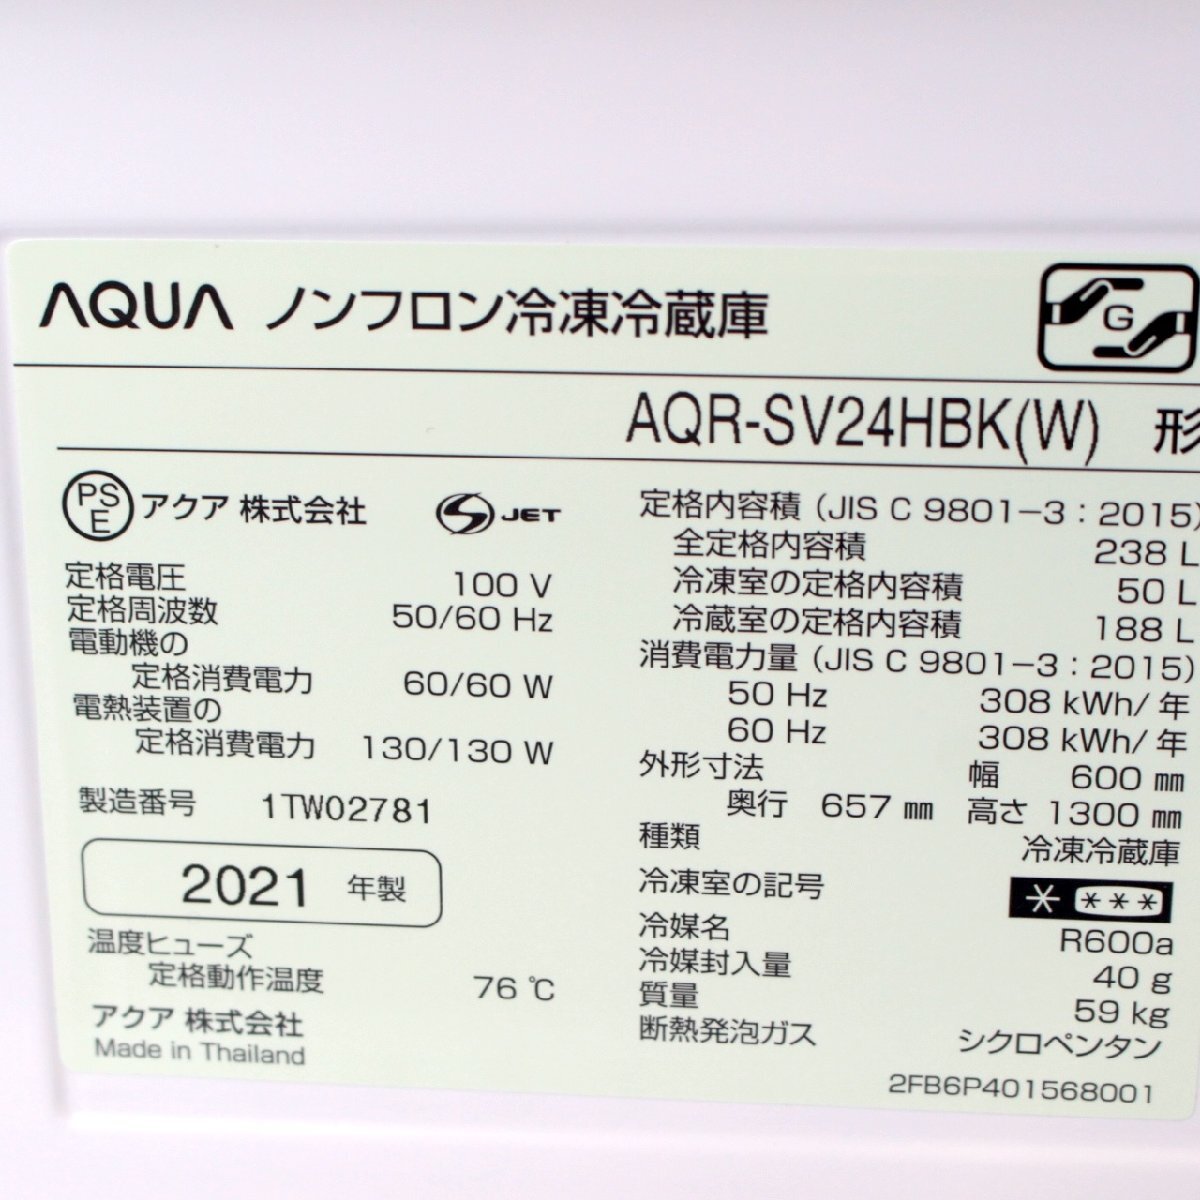 T988) アクア 3ドア 238L 2021年製 AQR-SV24HBK アンティークホワイト 右開き 幅60cm 自動製氷 旬鮮チルド AQUA ノンフロン冷凍冷蔵庫の画像6